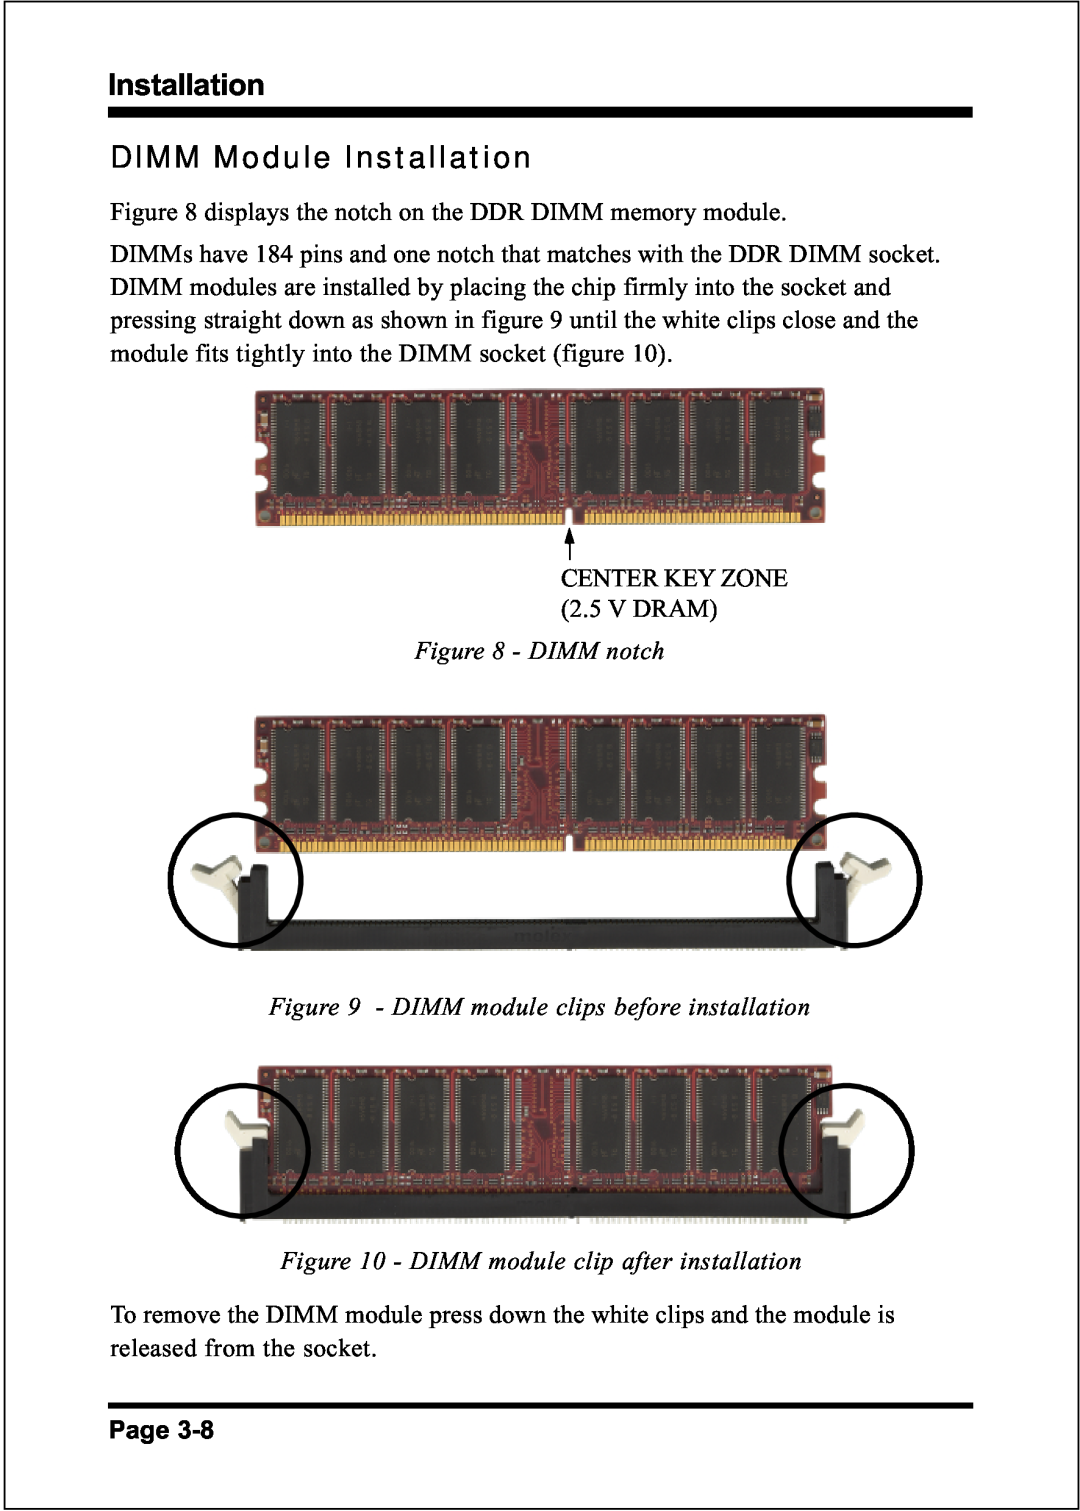 Intel FSB400 (PC2100), FSB800 (PC2700), FSB800 / DDR333 (PC2700), FSB800 (PC3200), FSB533 DIMM Module Installation 